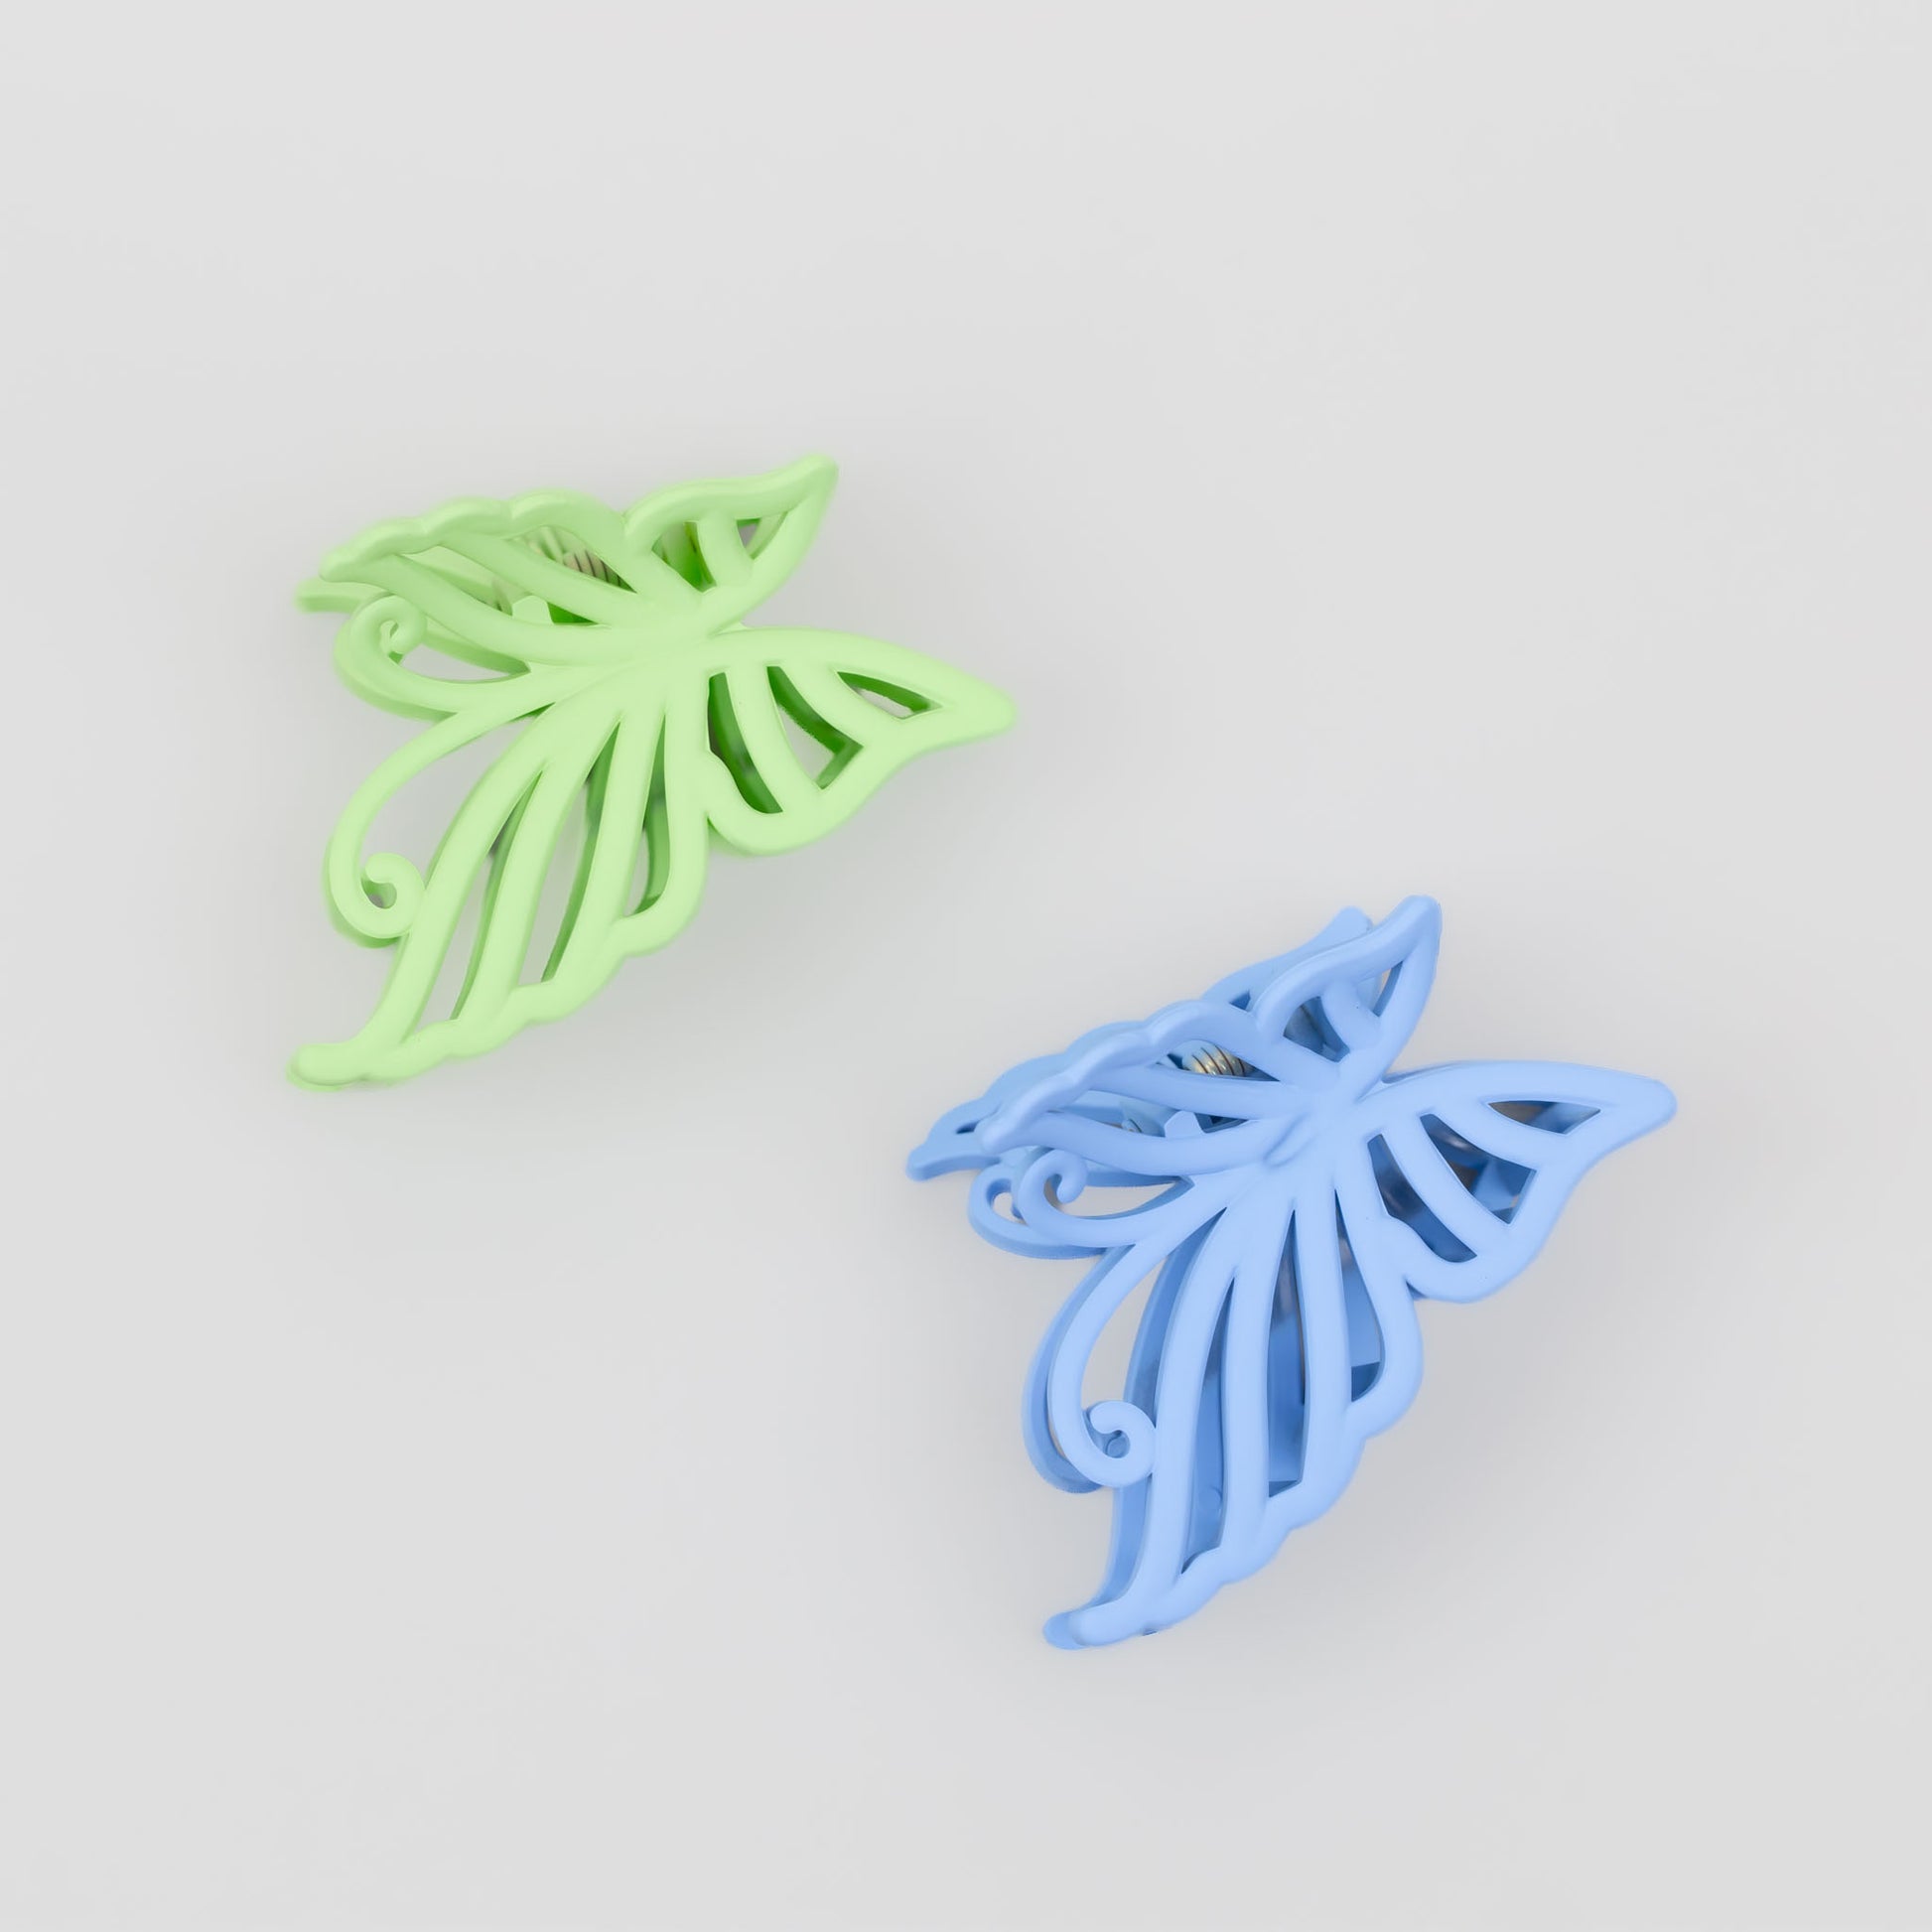 Clame de păr medii în formă de fluture cu textură de silicon, set 2 buc - Verde, Albastru